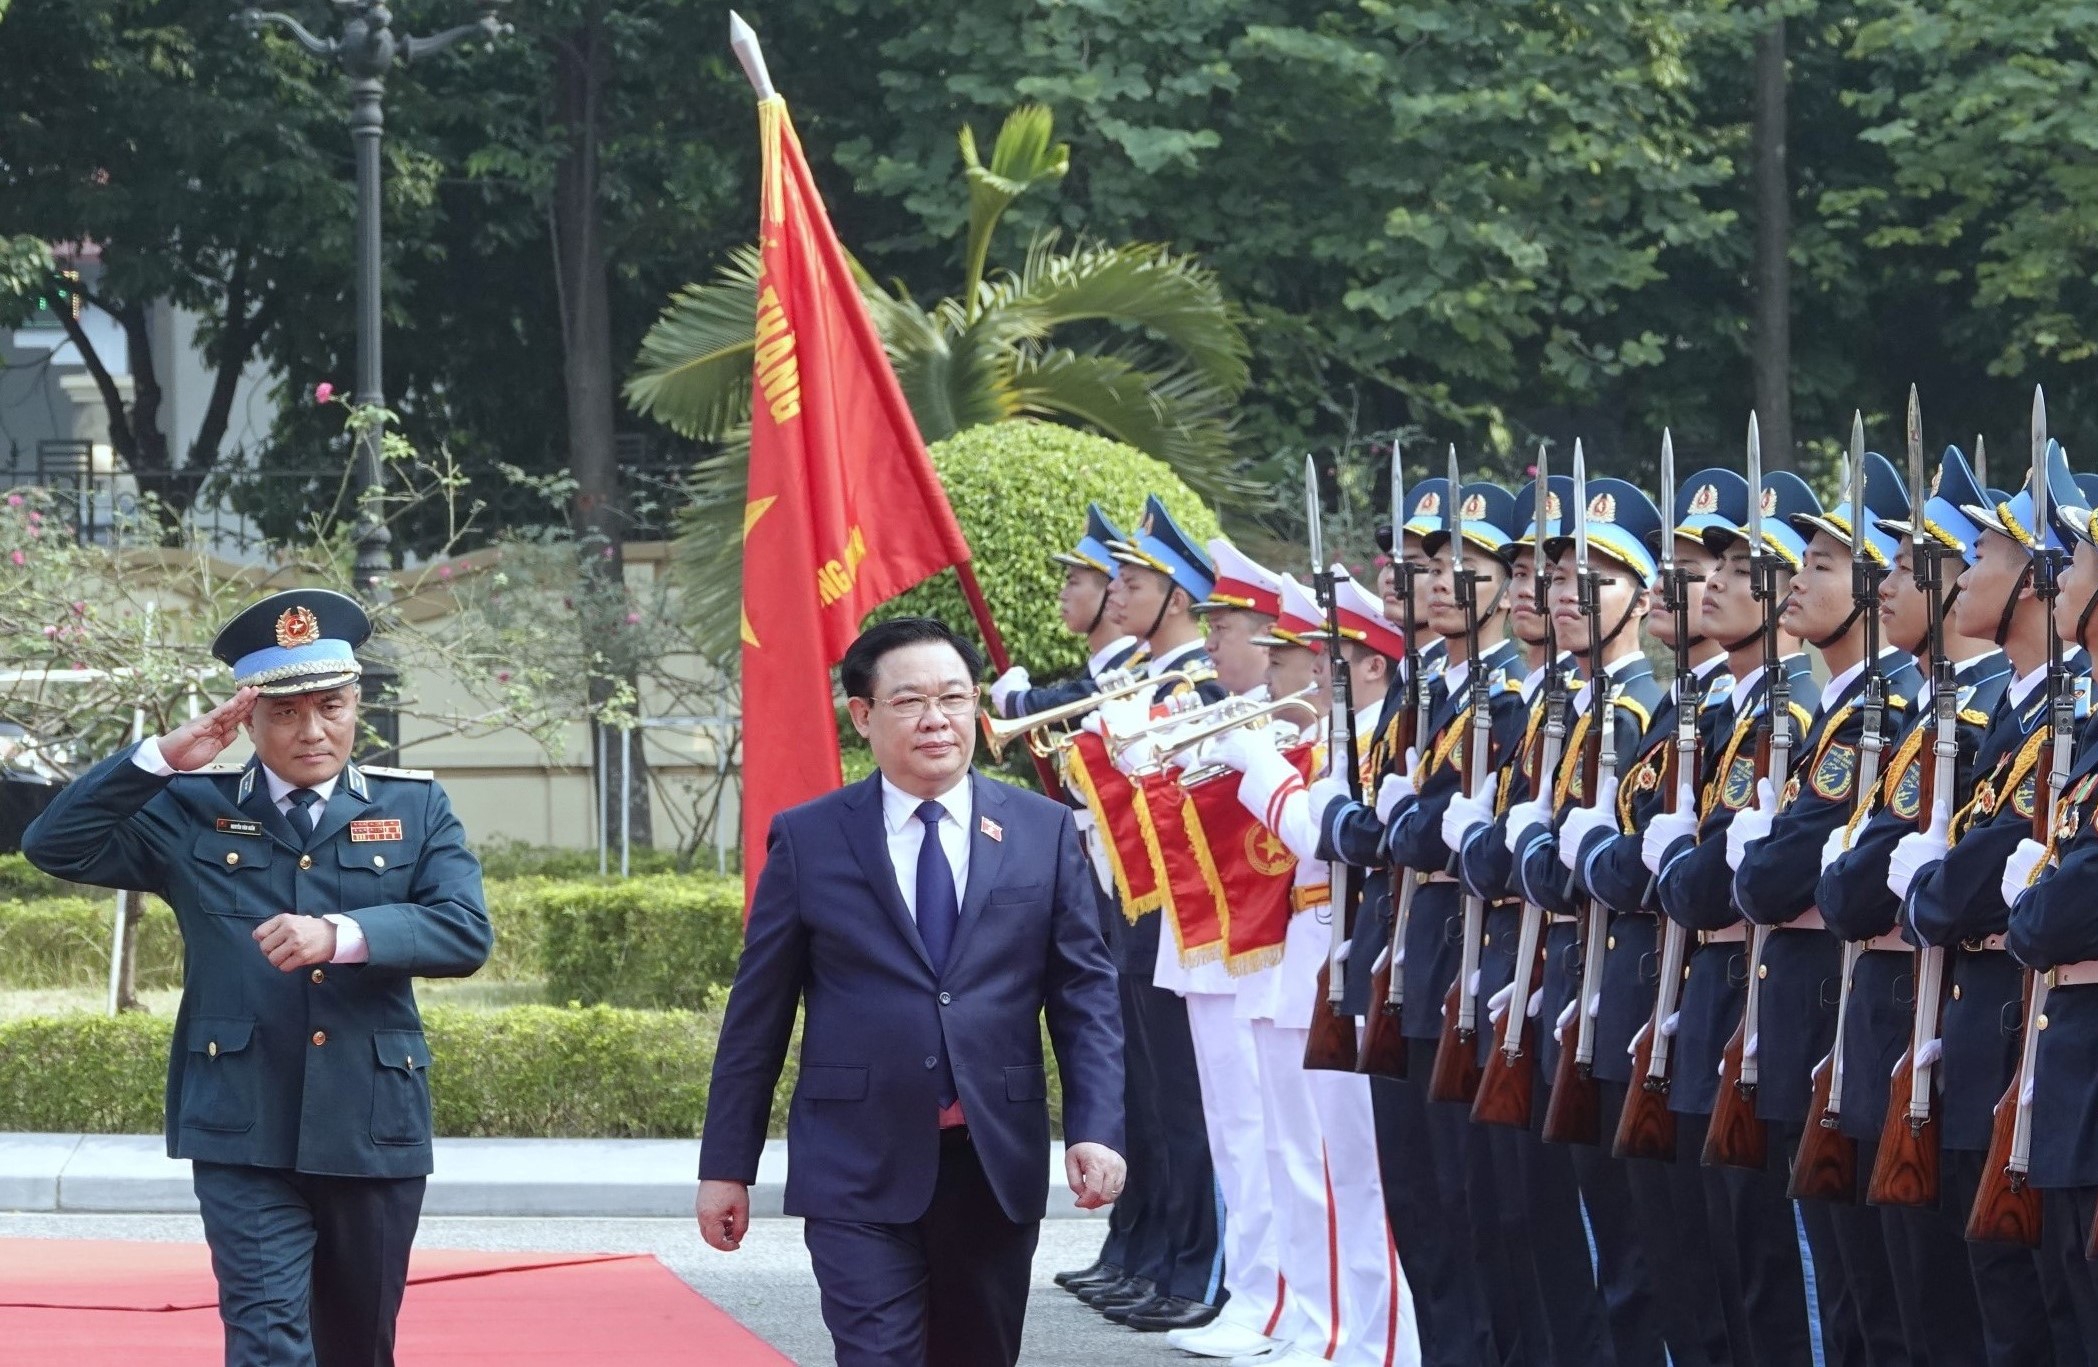 Tư lệnh Nguyễn Văn Hiền: Nắm chắc tình hình, sẵn sàng bảo vệ Tổ quốc trong mọi tình huống